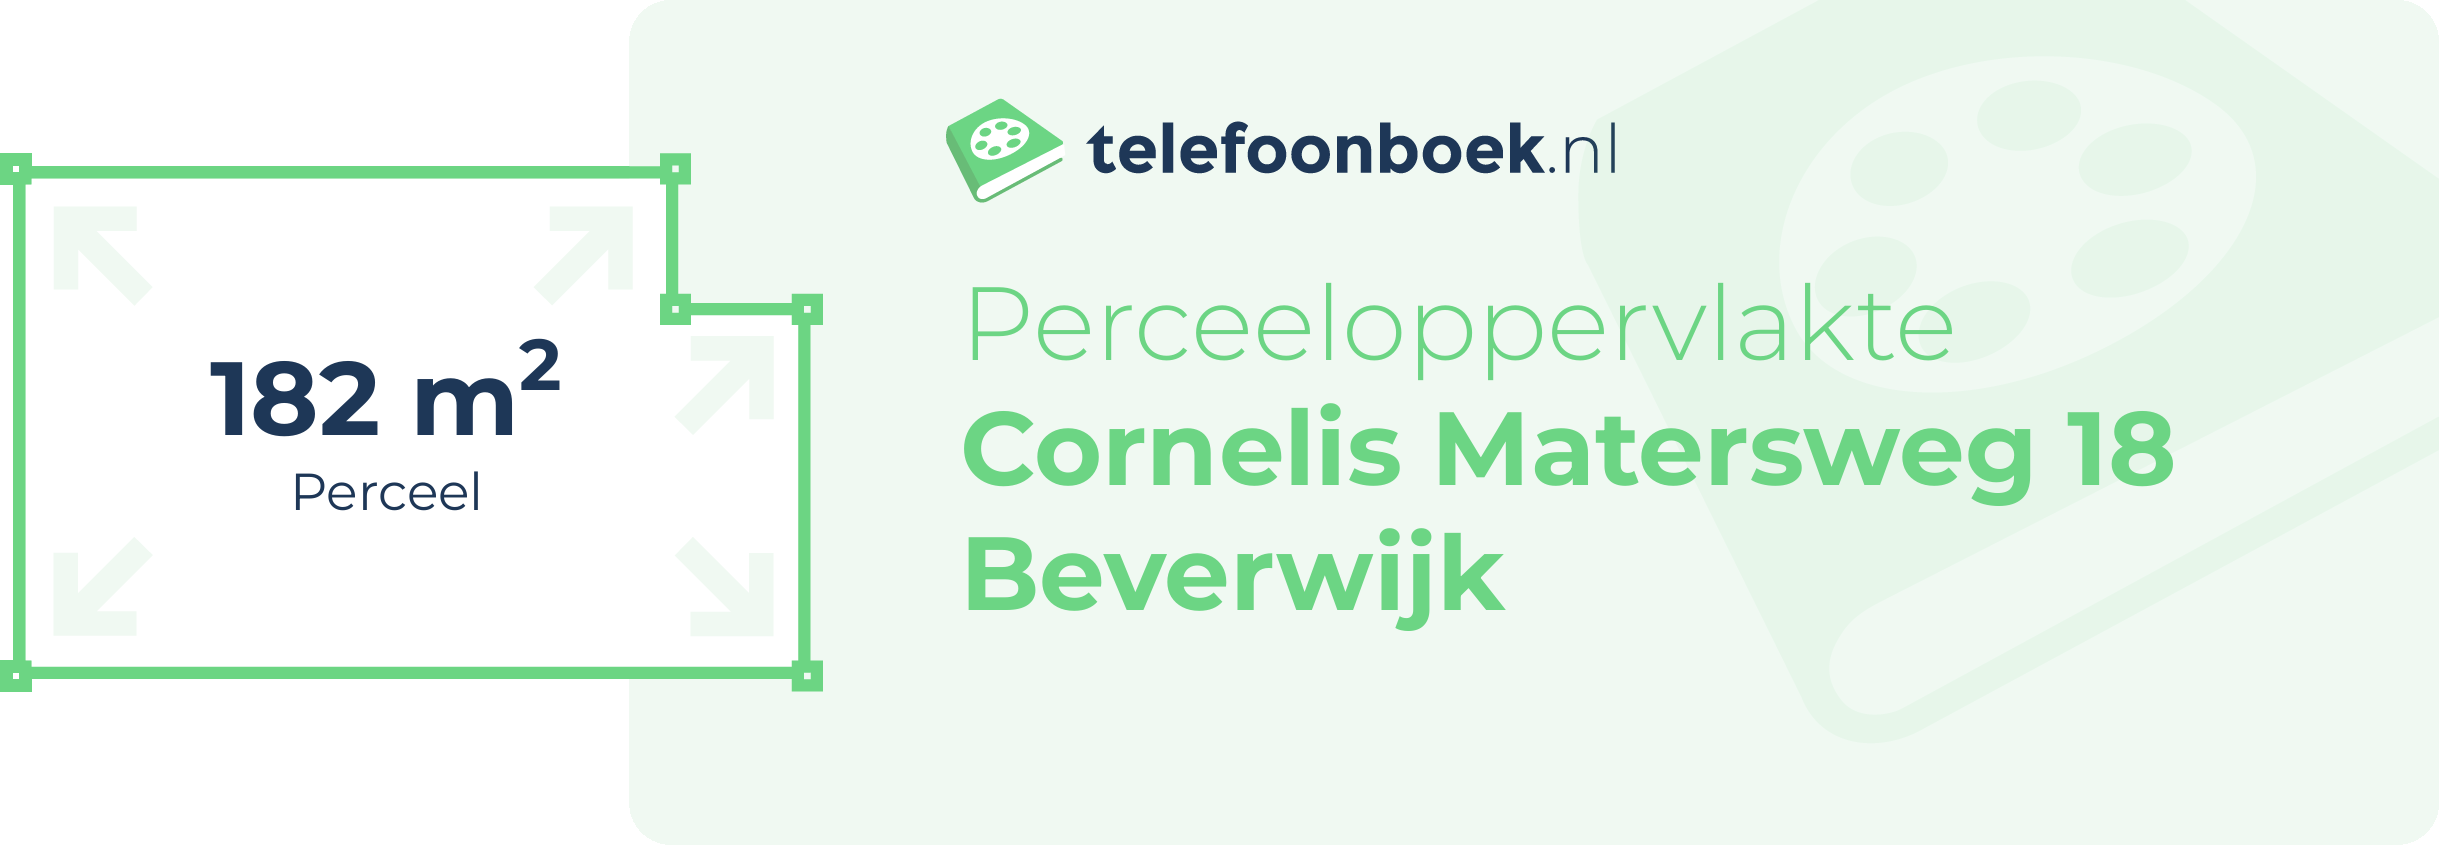 Perceeloppervlakte Cornelis Matersweg 18 Beverwijk